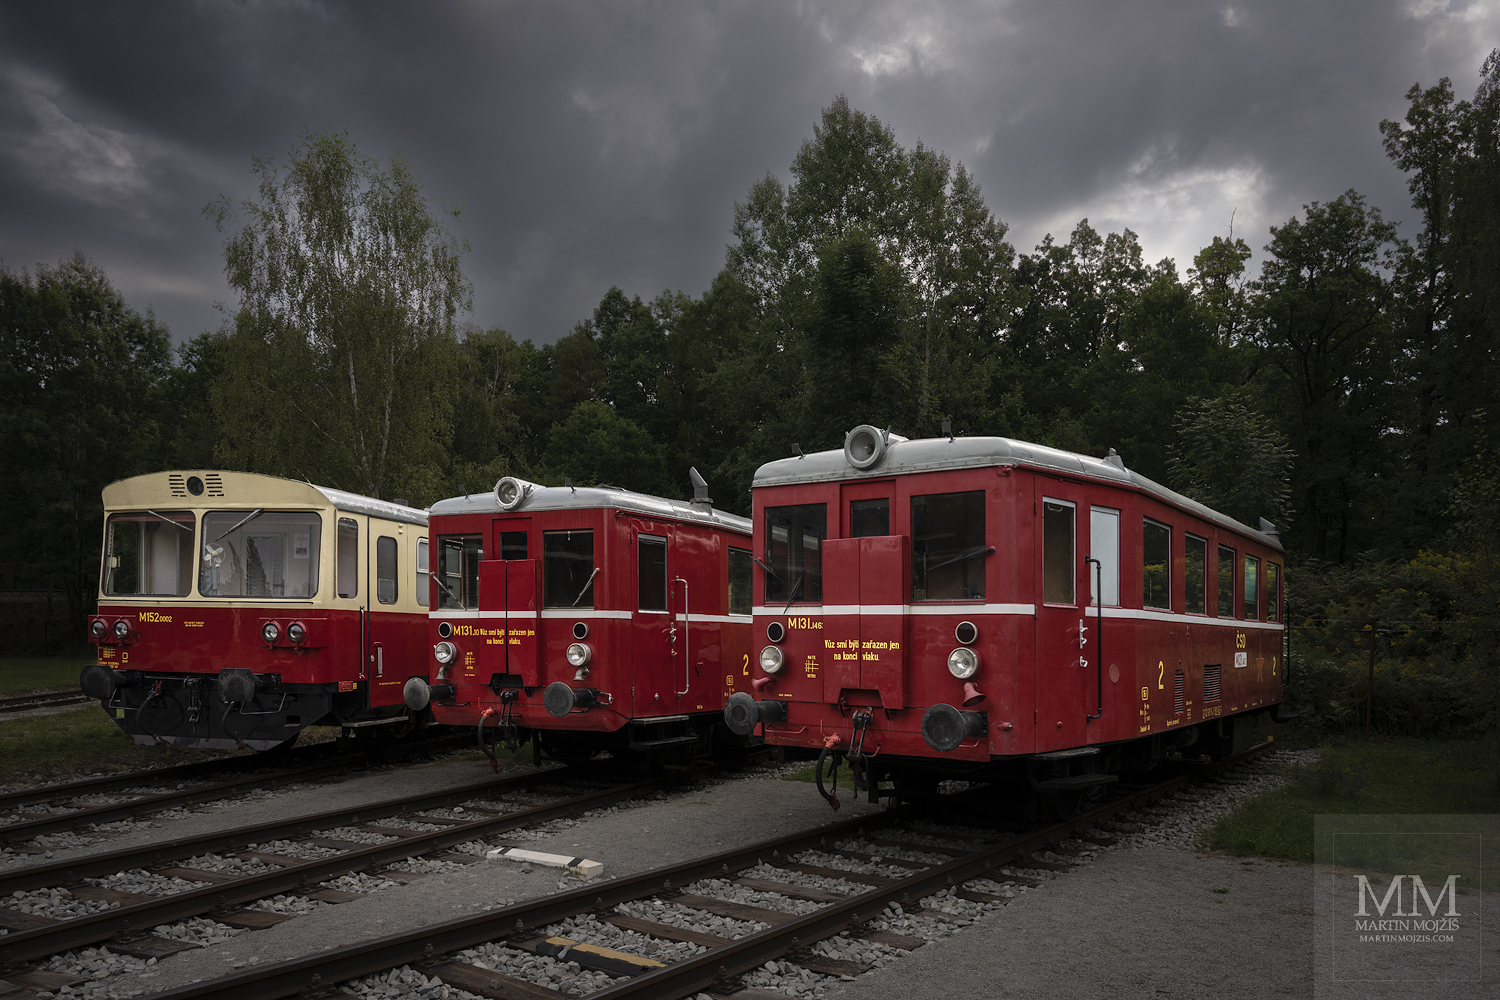 Tři motorové vozy. Vlevo M 152.0002, vedle něj dva M 131.